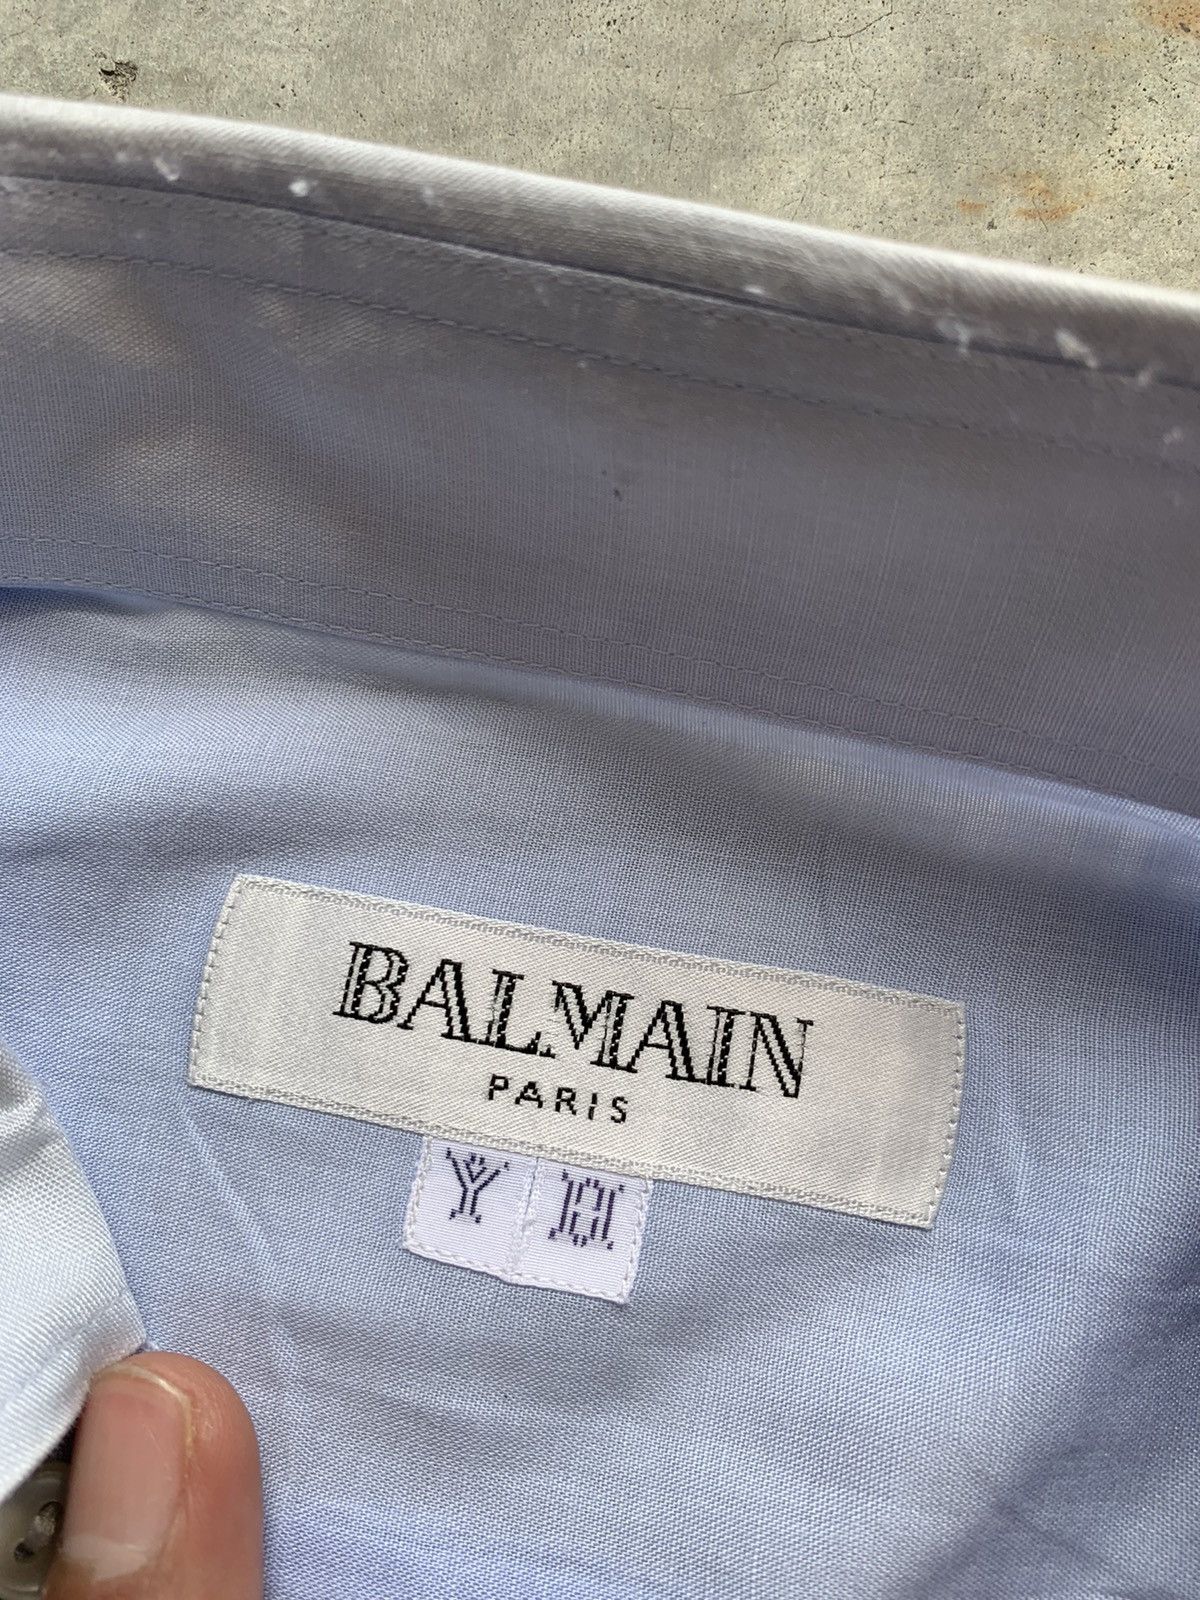 Vintage Balmain Paris Button Up Shirt - 5